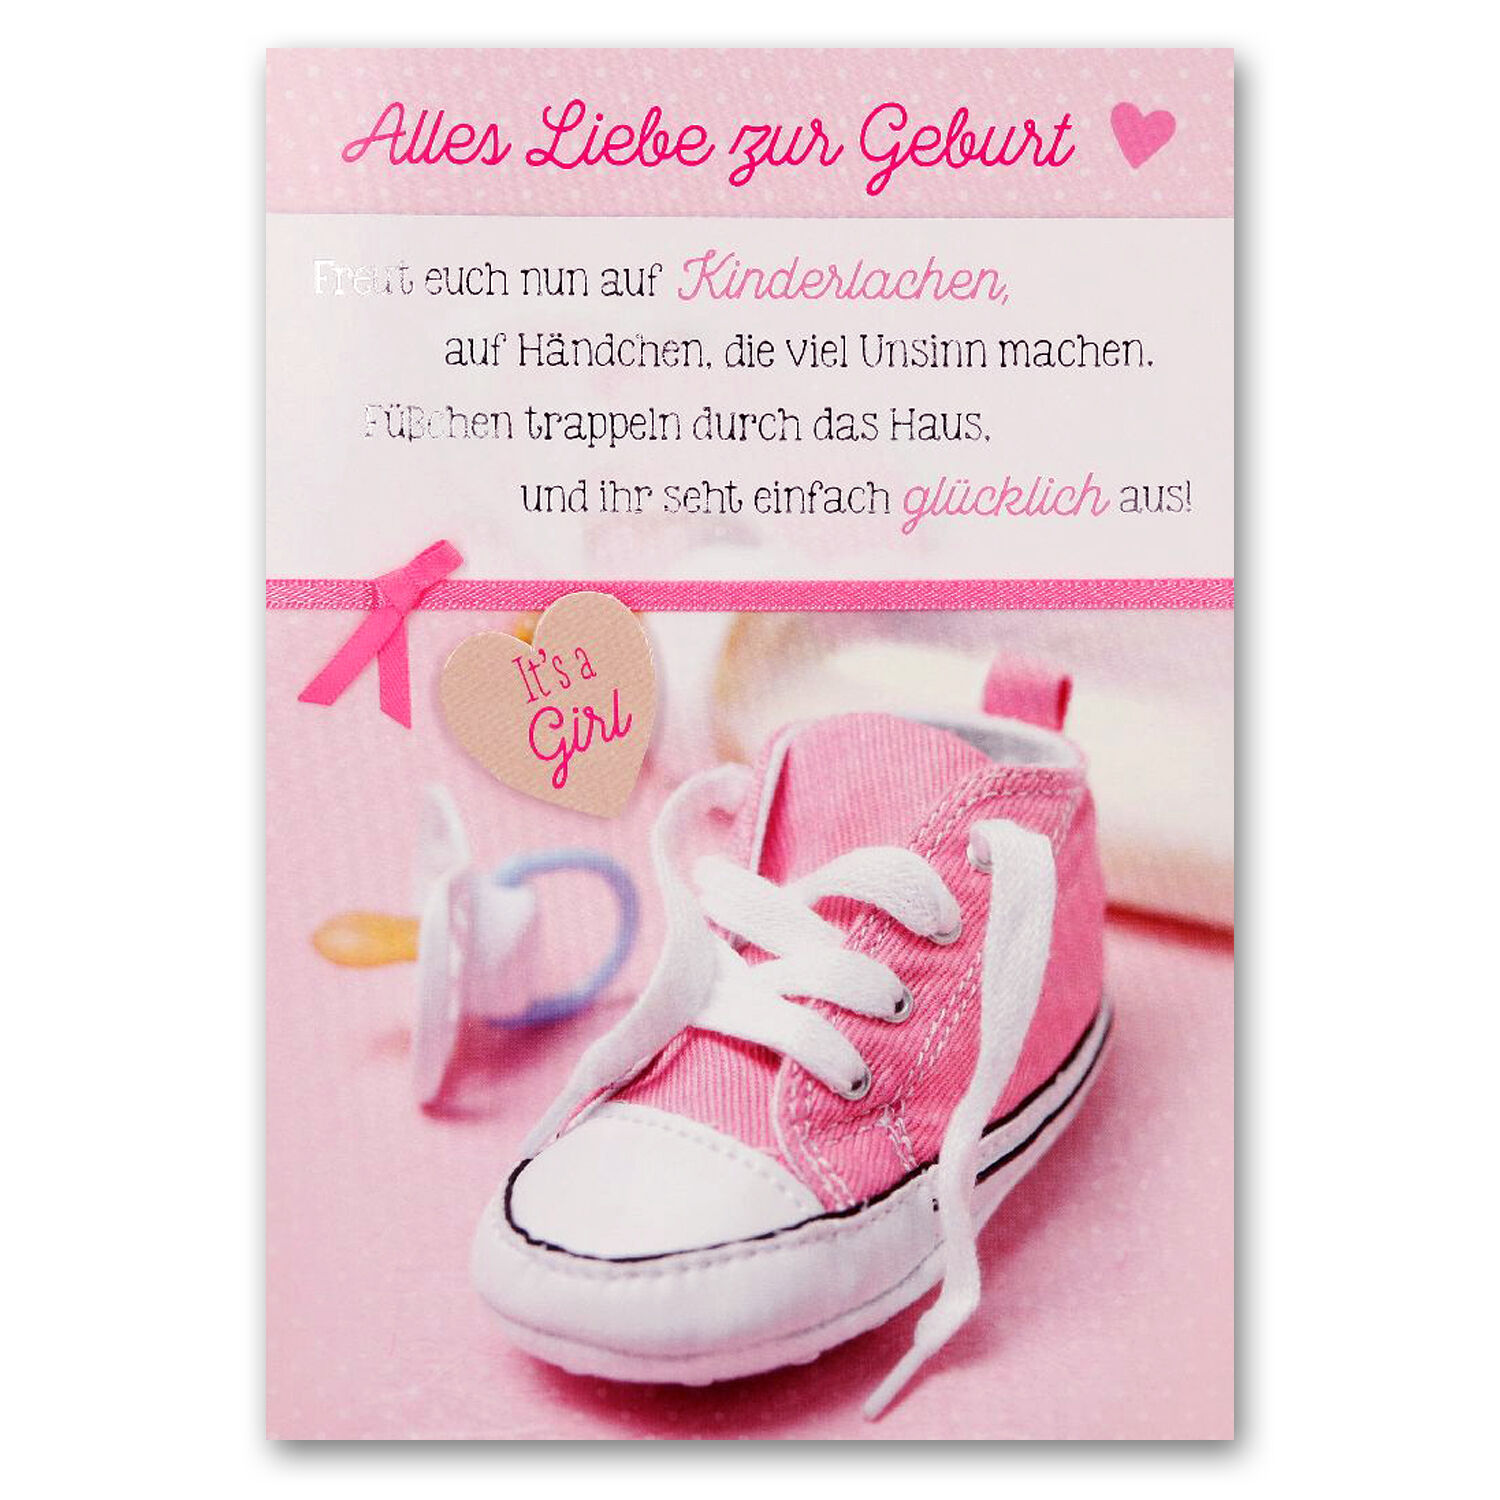 Grußkarte DIN A6, Alles Liebe zur Geburt, It's a Girl- Ideal passend zu unseren Ballongrüßen